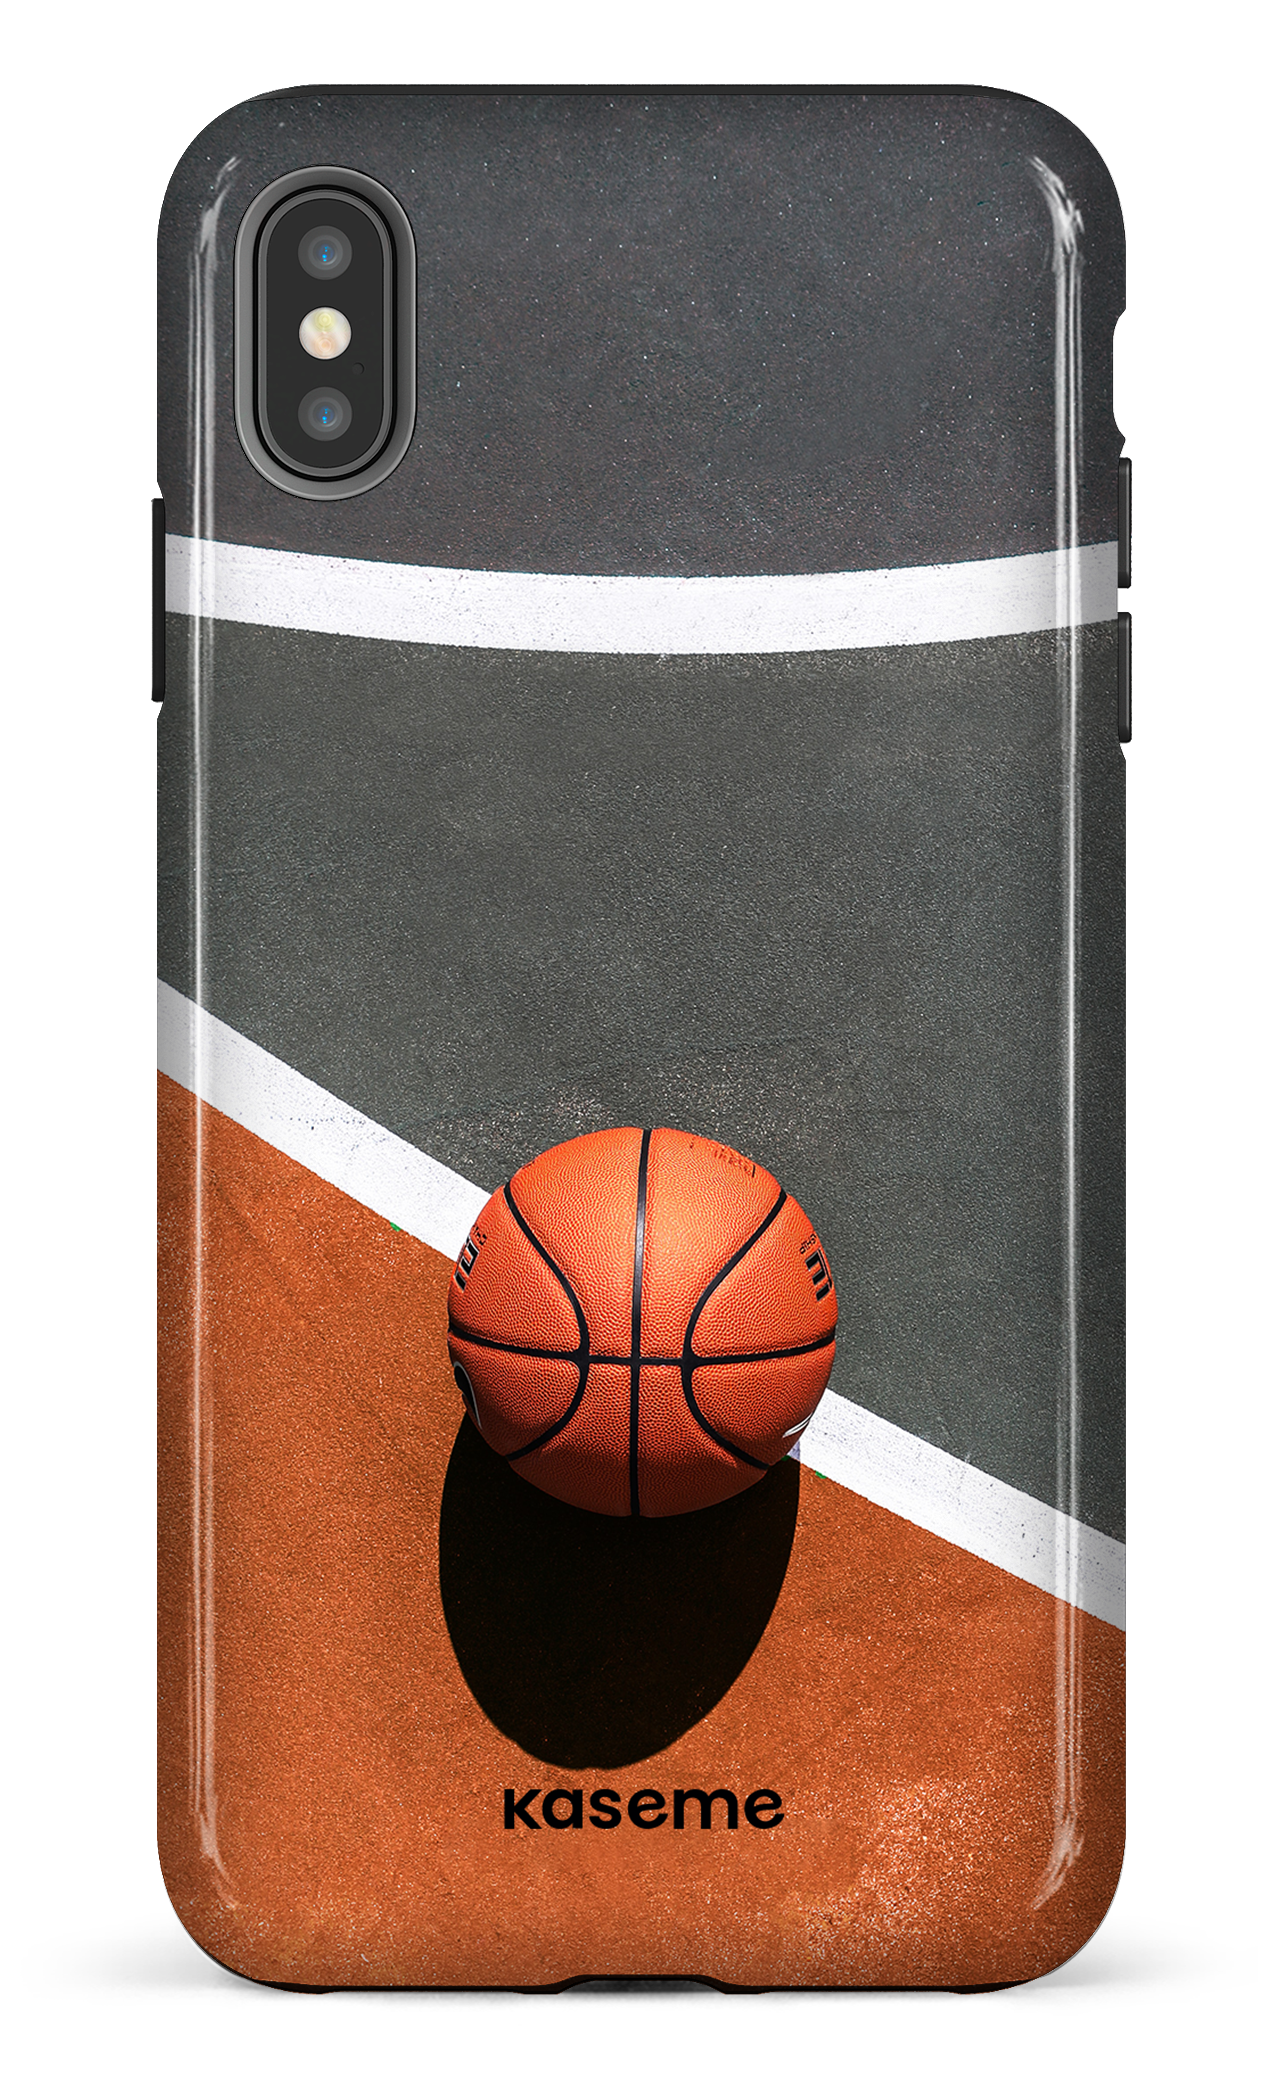 Baller - iPhone XS Max